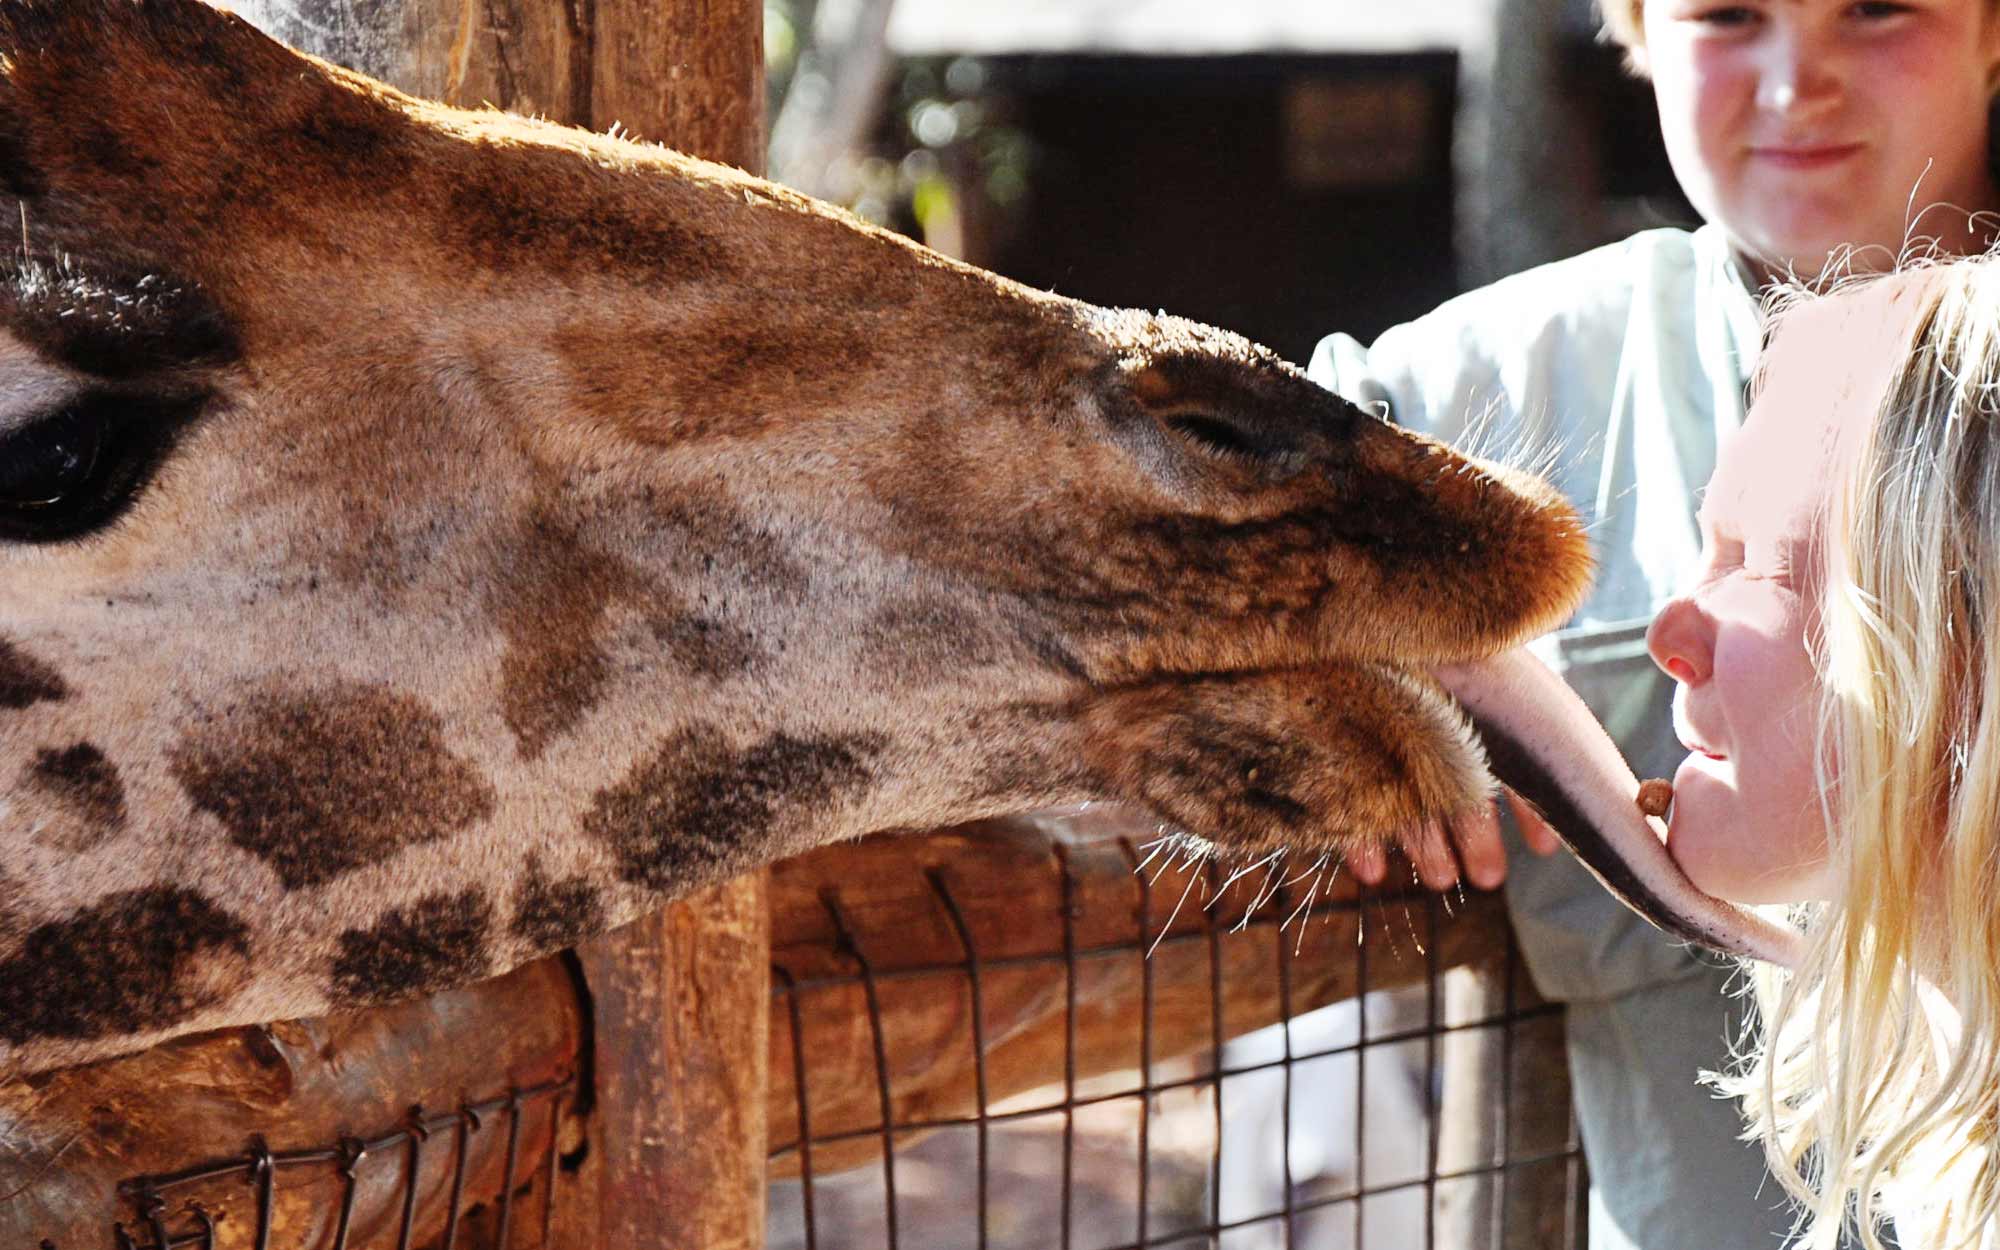 Giraffe Center in Kenya - Little Girl getting the Kiss of Life